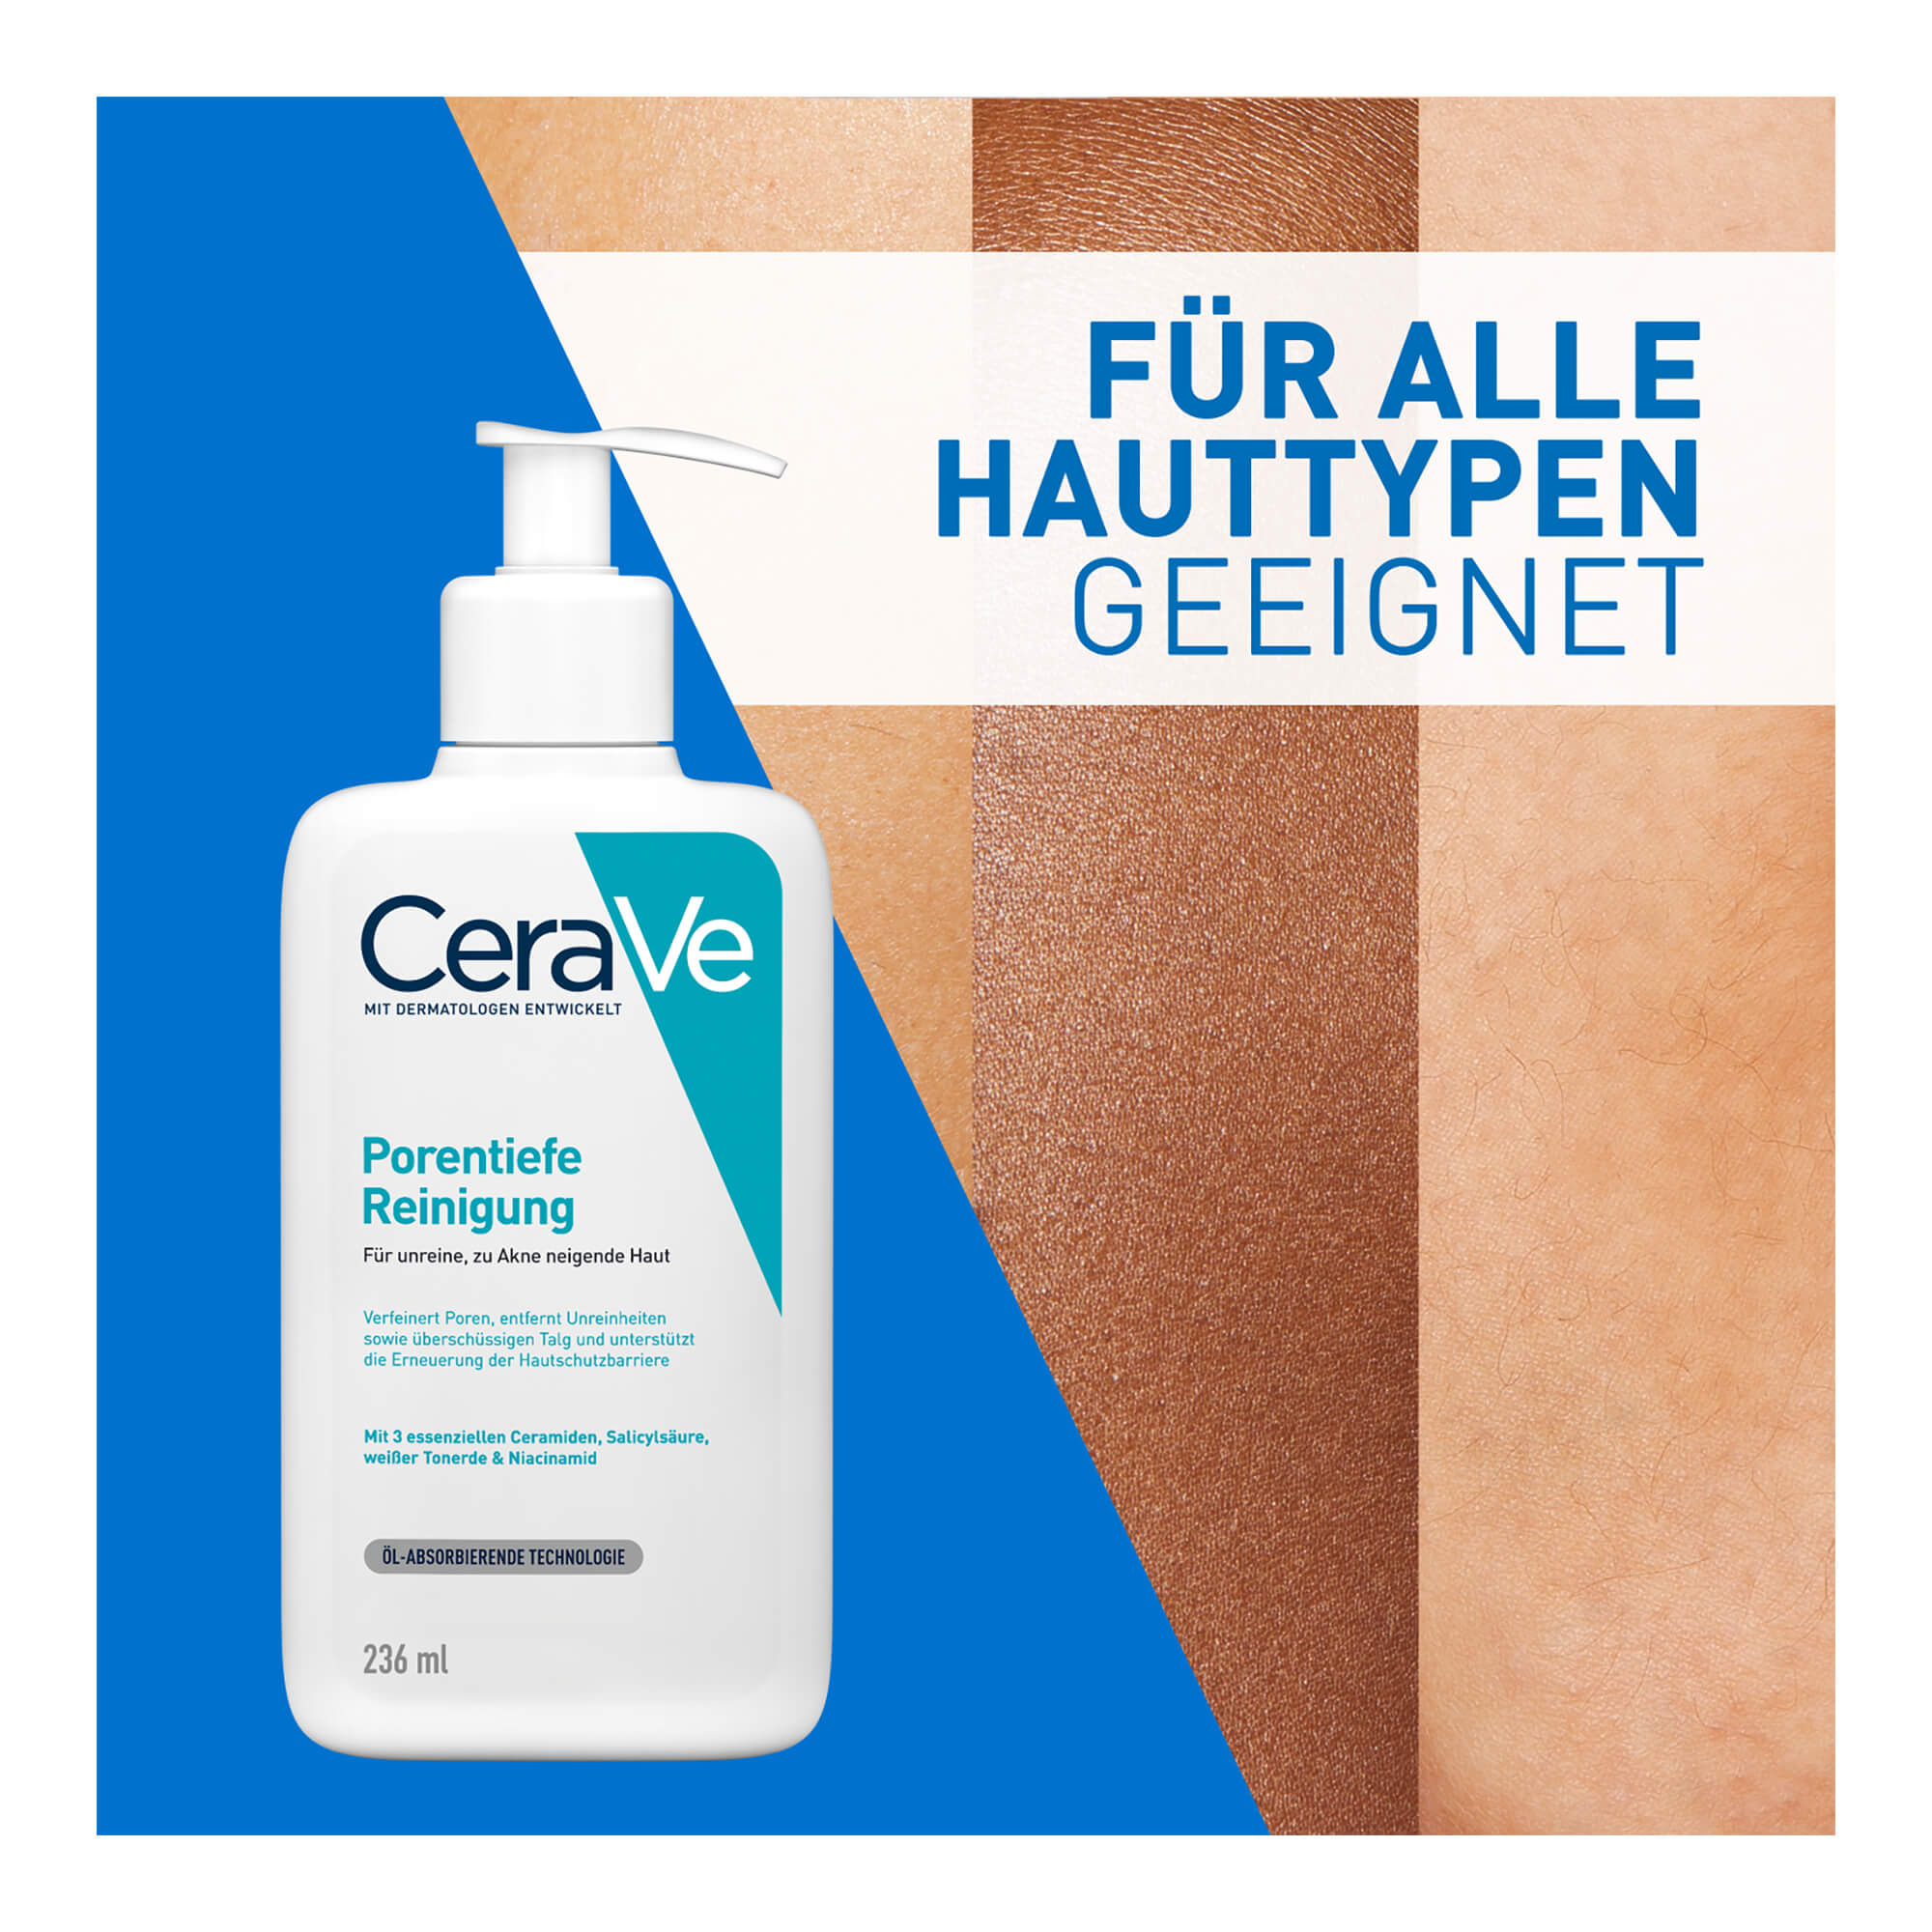 Grafik CeraVe Porentiefes Reinigungsgel Für alle Hauttypen geeignet